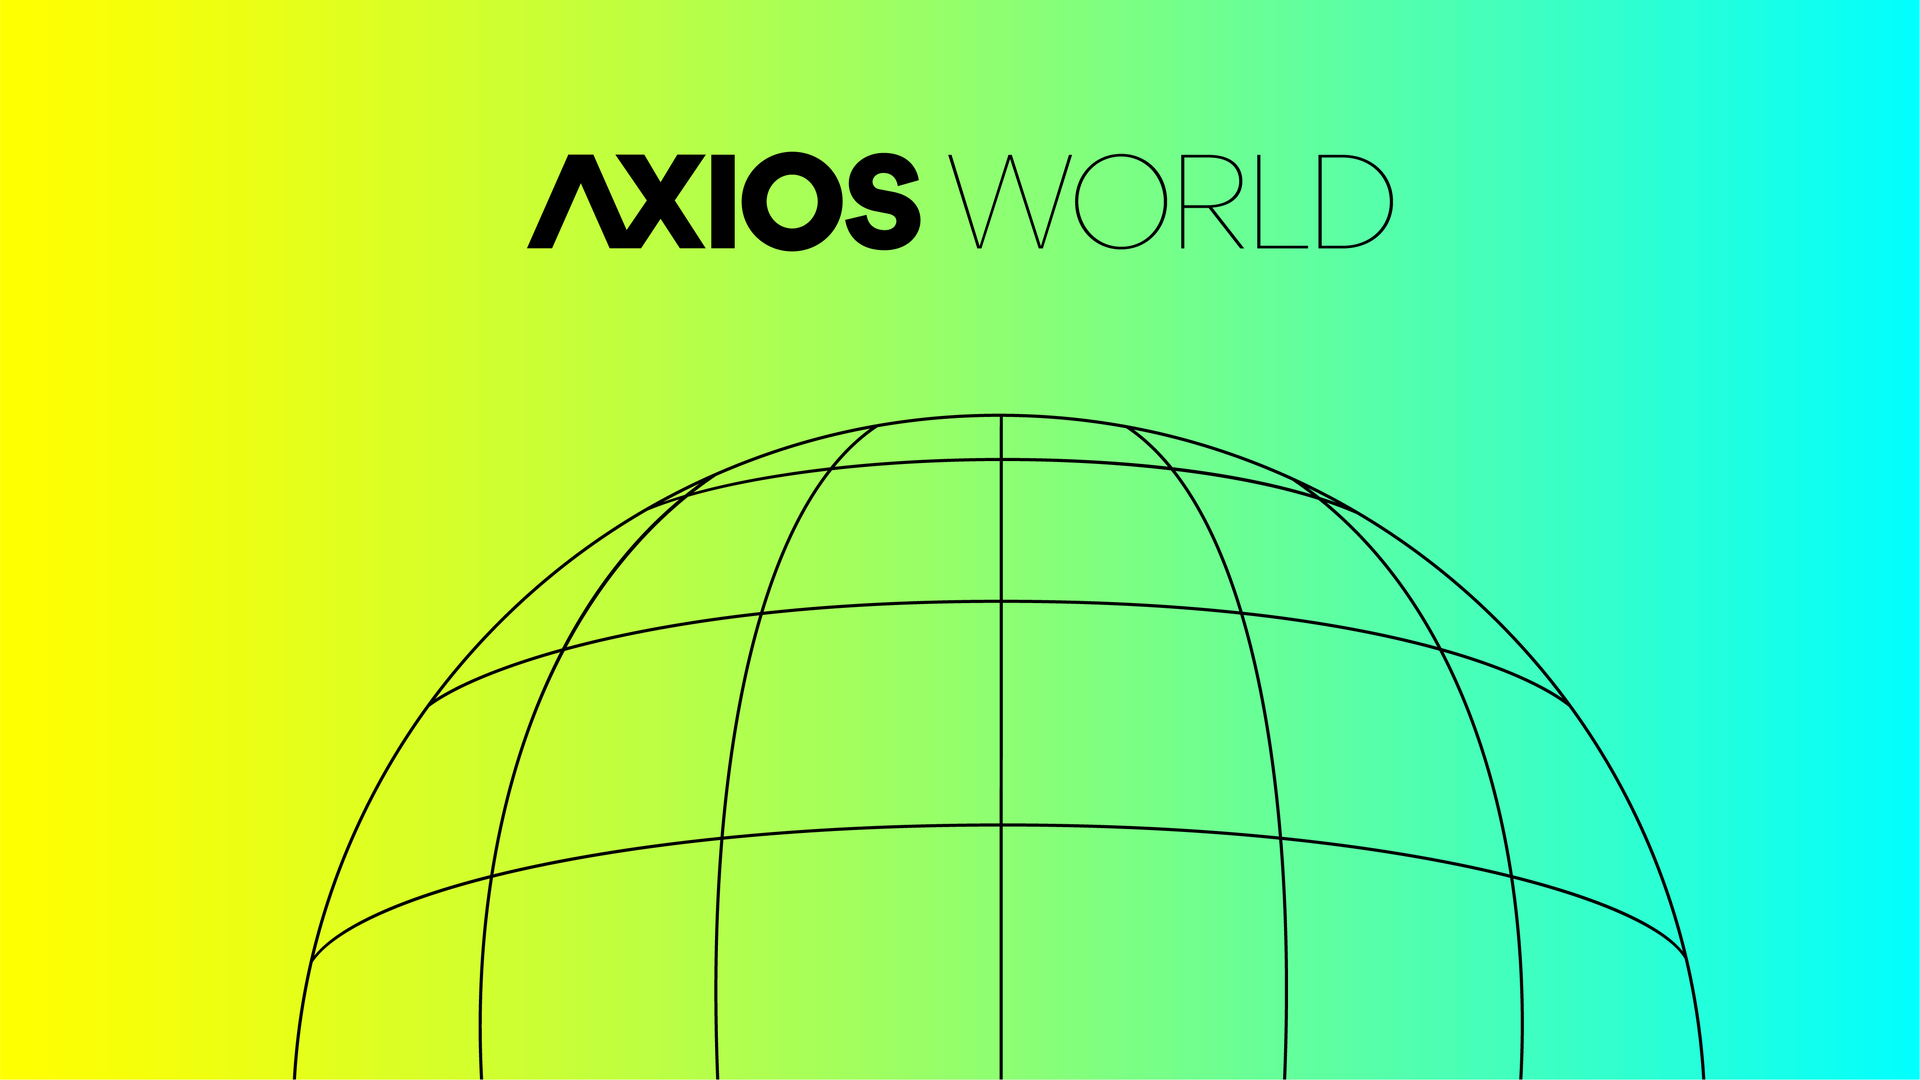 Axios world logo